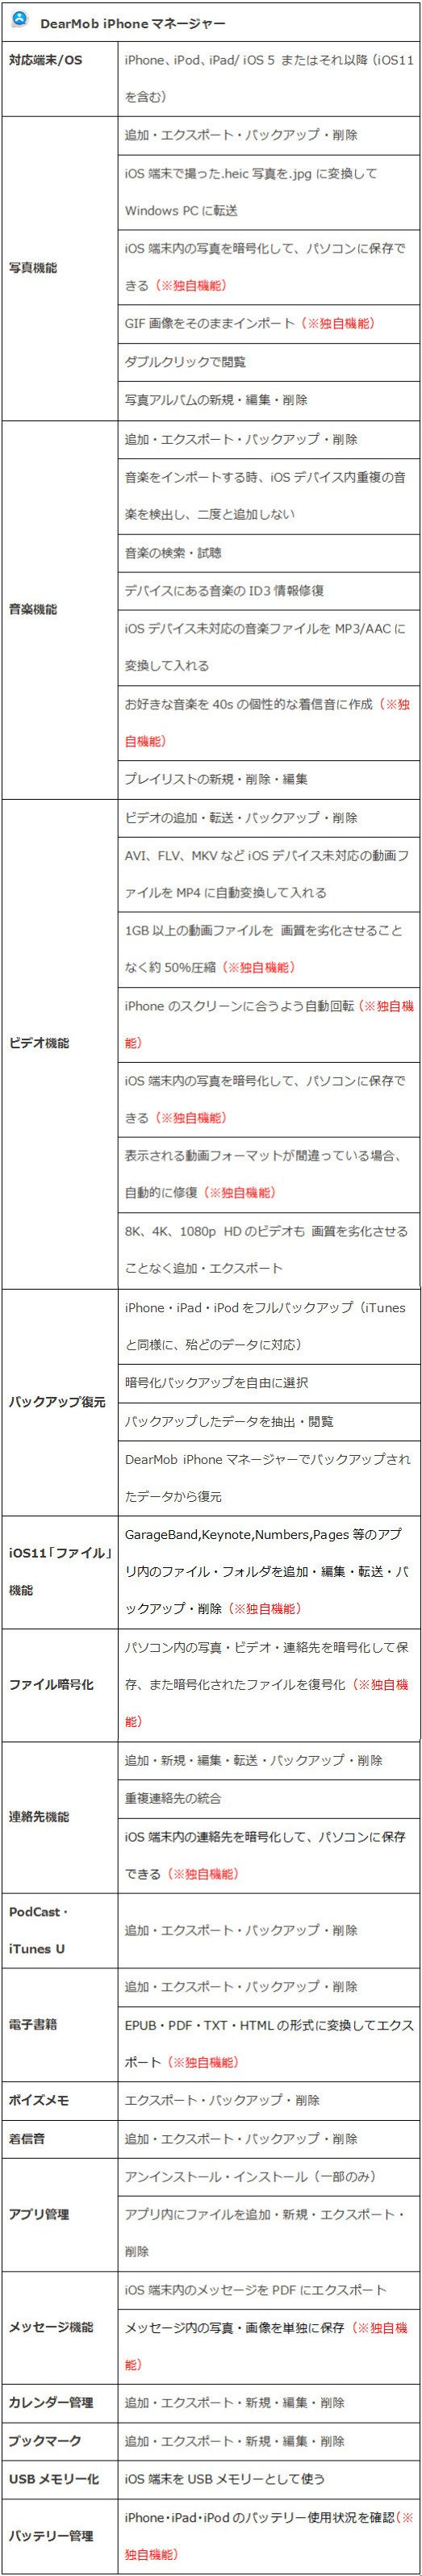 Dearmob Iphoneマネージャーと主流のiphoneデータ転送 バックアップ 管理ソフトの比較